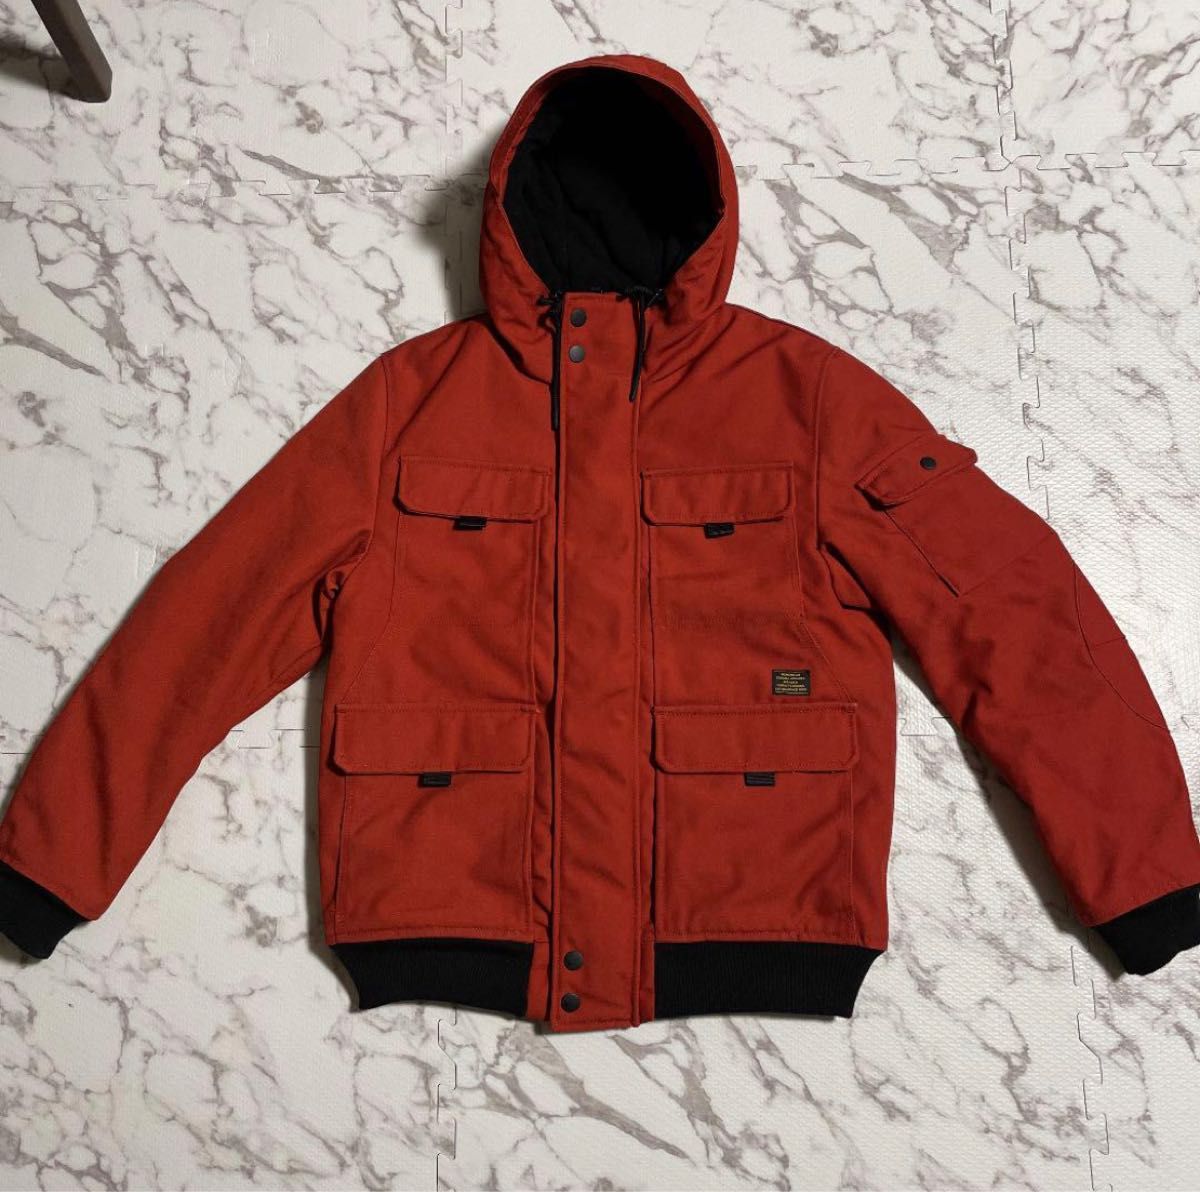 H&M ミリタリー キルティングジャケット 赤 レッド Sサイズ